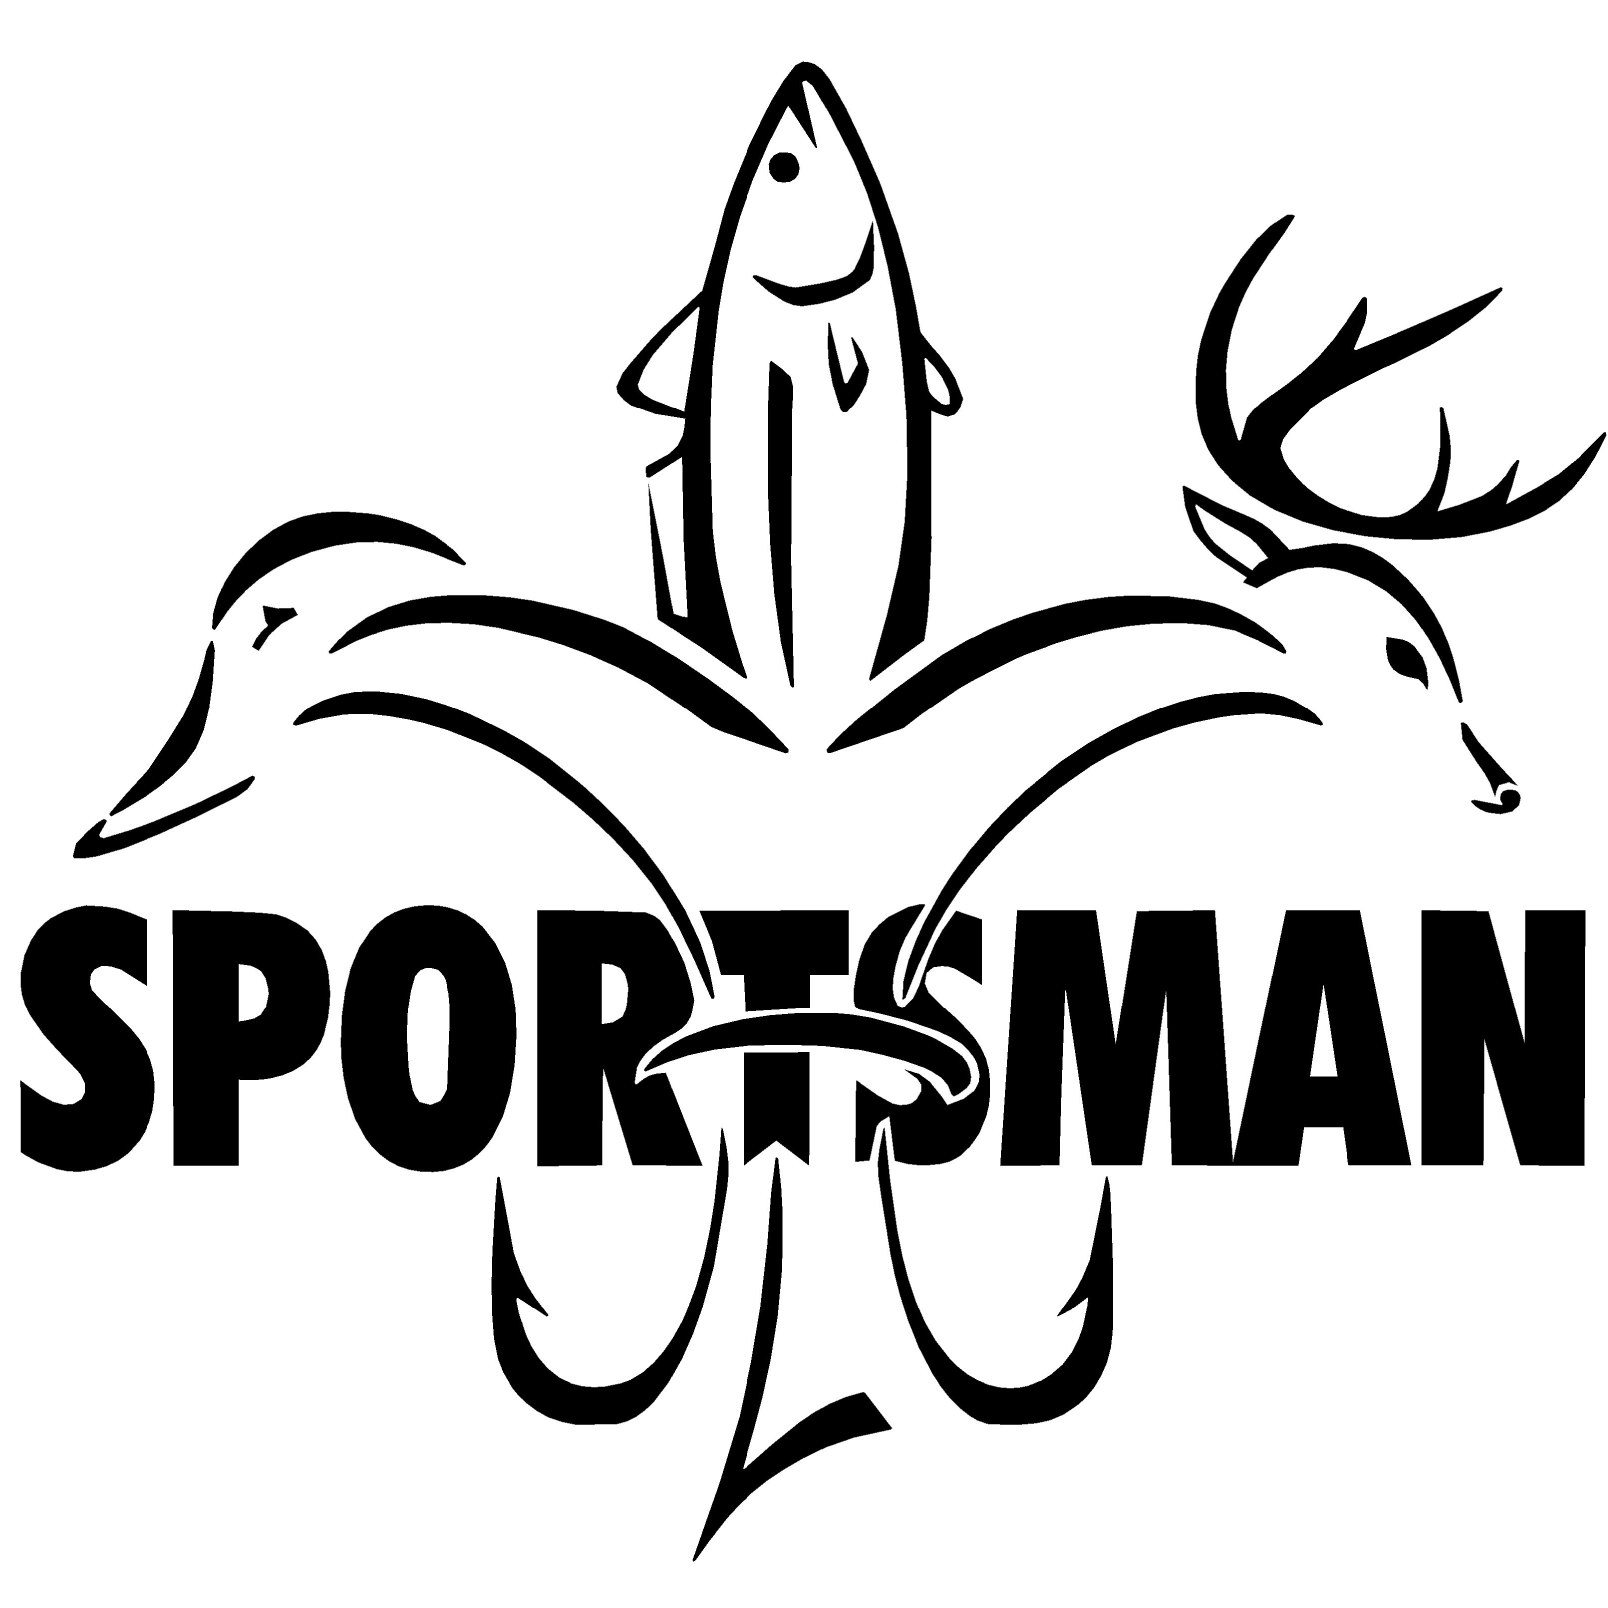 Sportsman Decal W/ Word - Deer Duck Fish Hook Fleur De Lis Logo with Sportsman written through it.